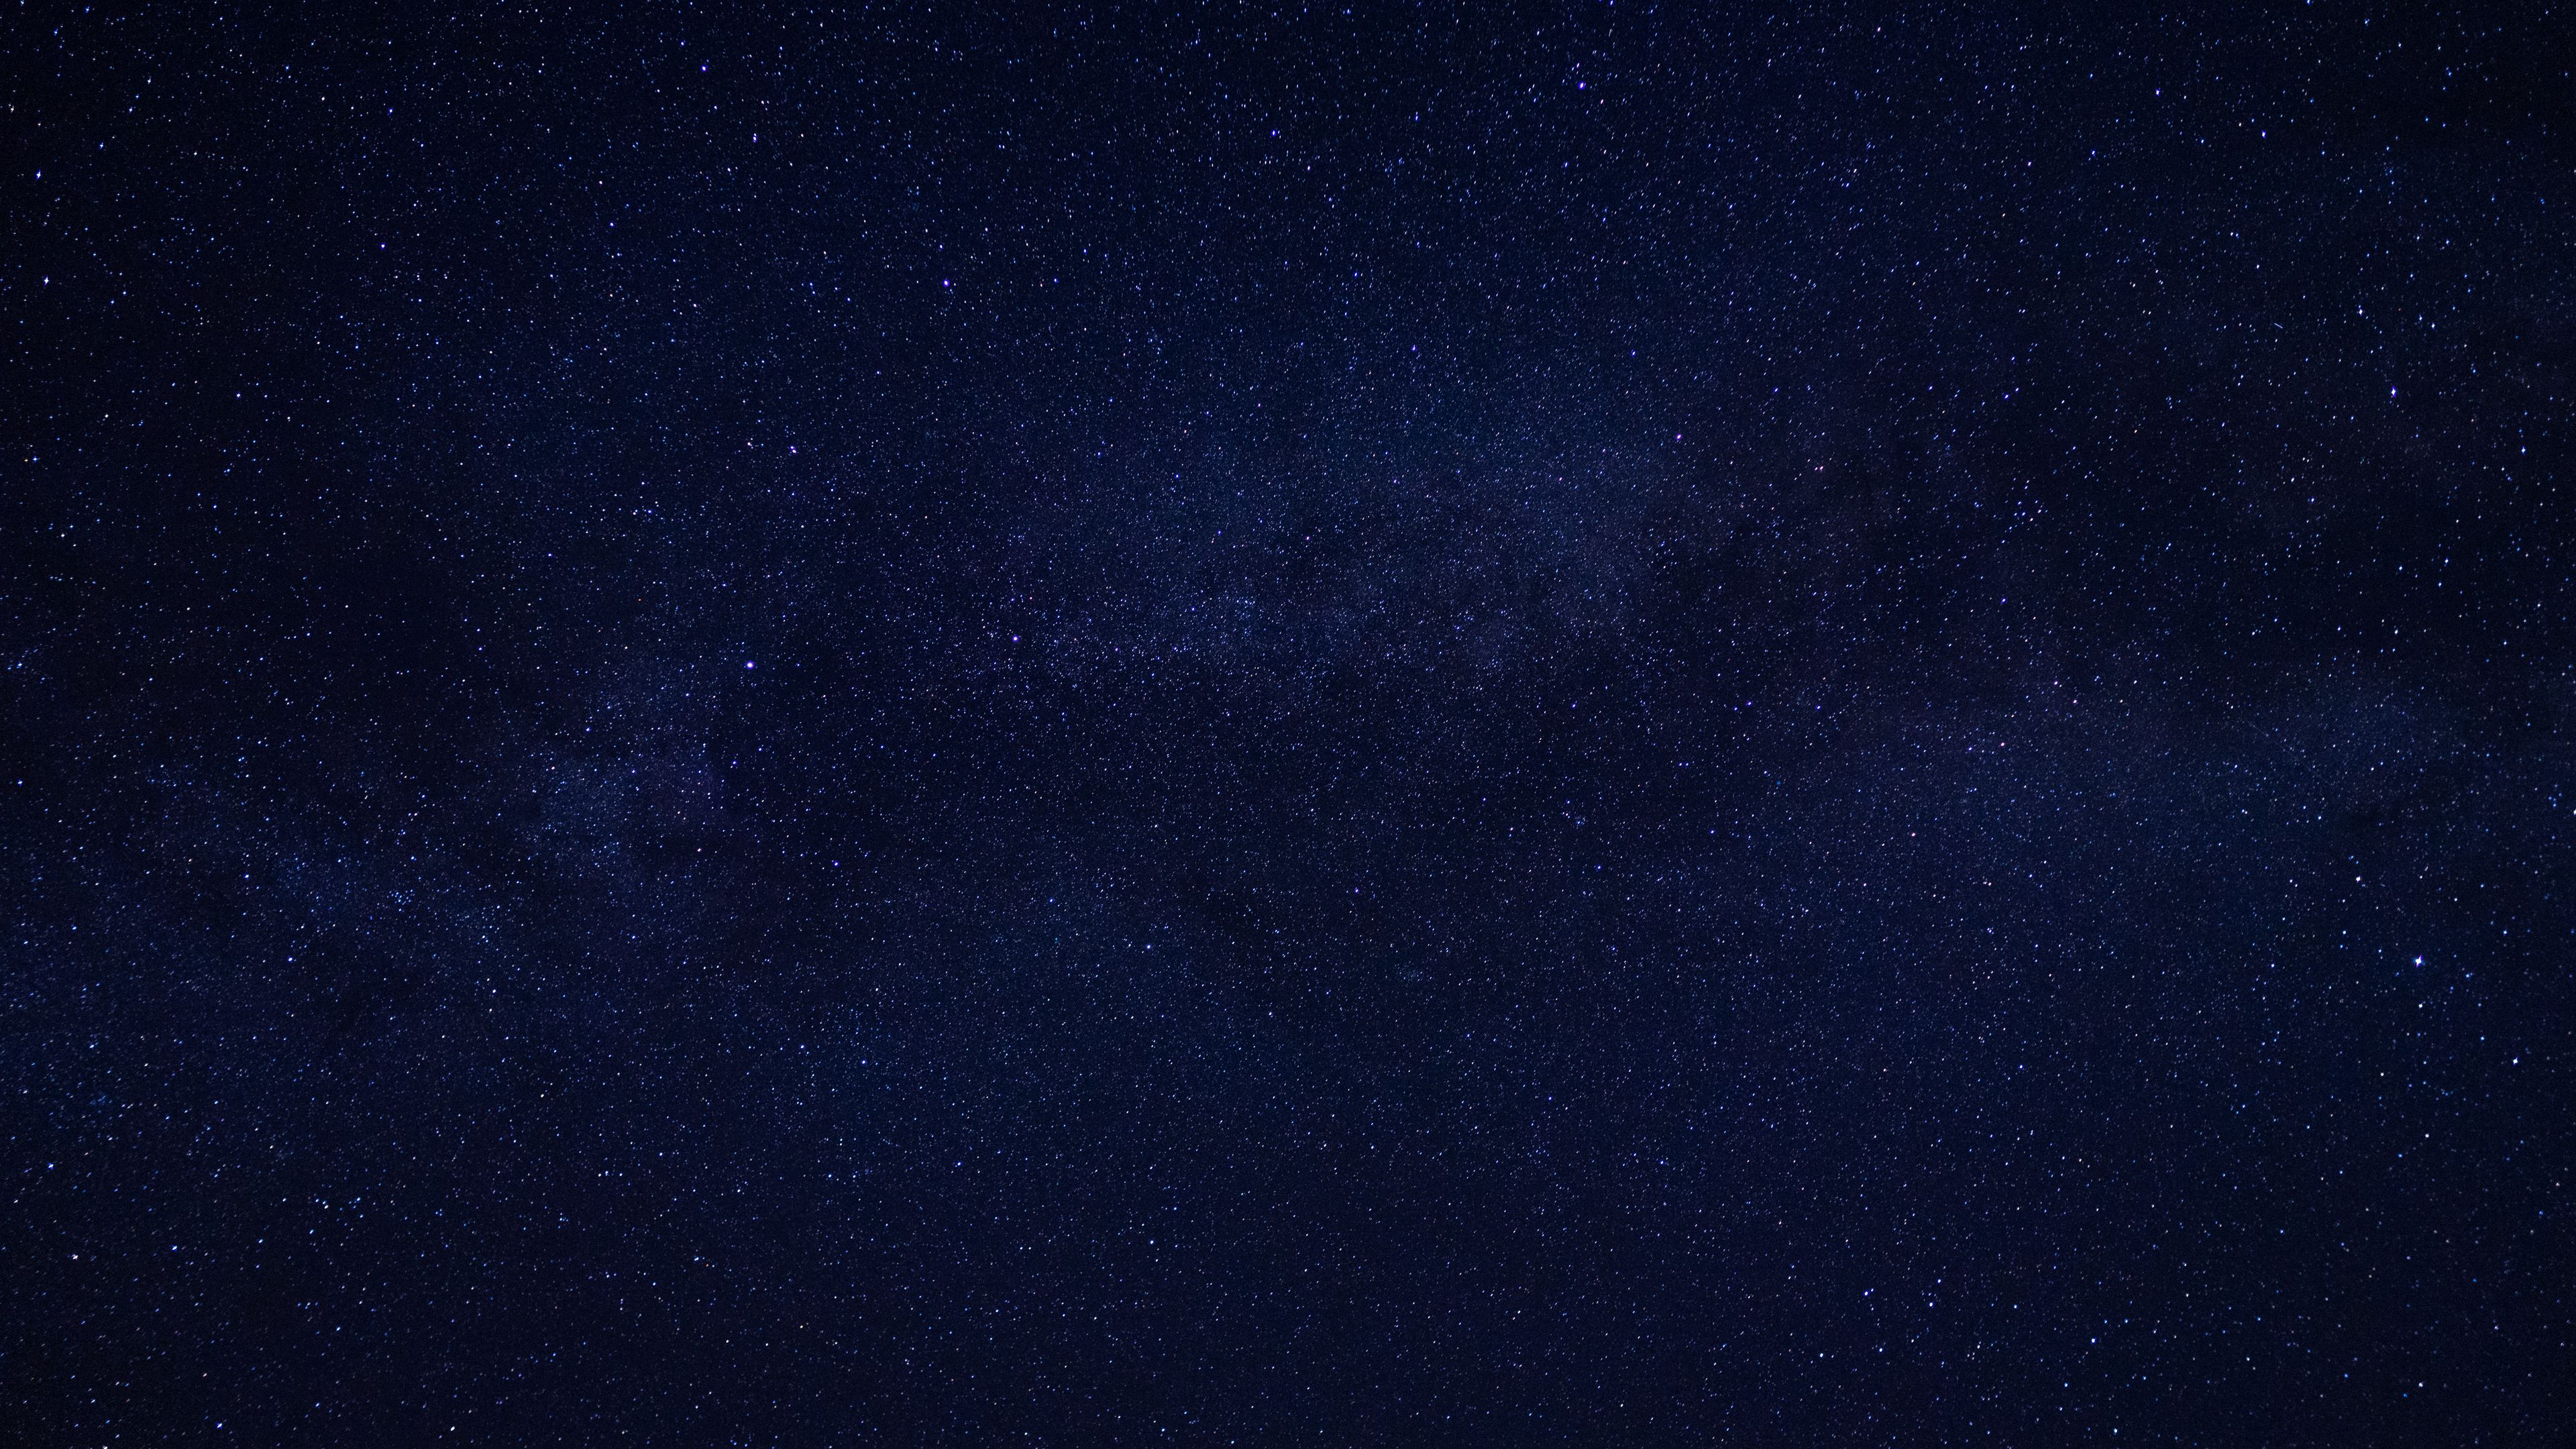 Starry sky mang đến cho bạn cảm giác kỳ diệu như đang thưởng thức một màn trình diễn thật sự tuyệt vời của thiên nhiên. Điều này chắc chắn sẽ làm bạn cảm thấy thư giãn sau những giờ làm việc căng thẳng.